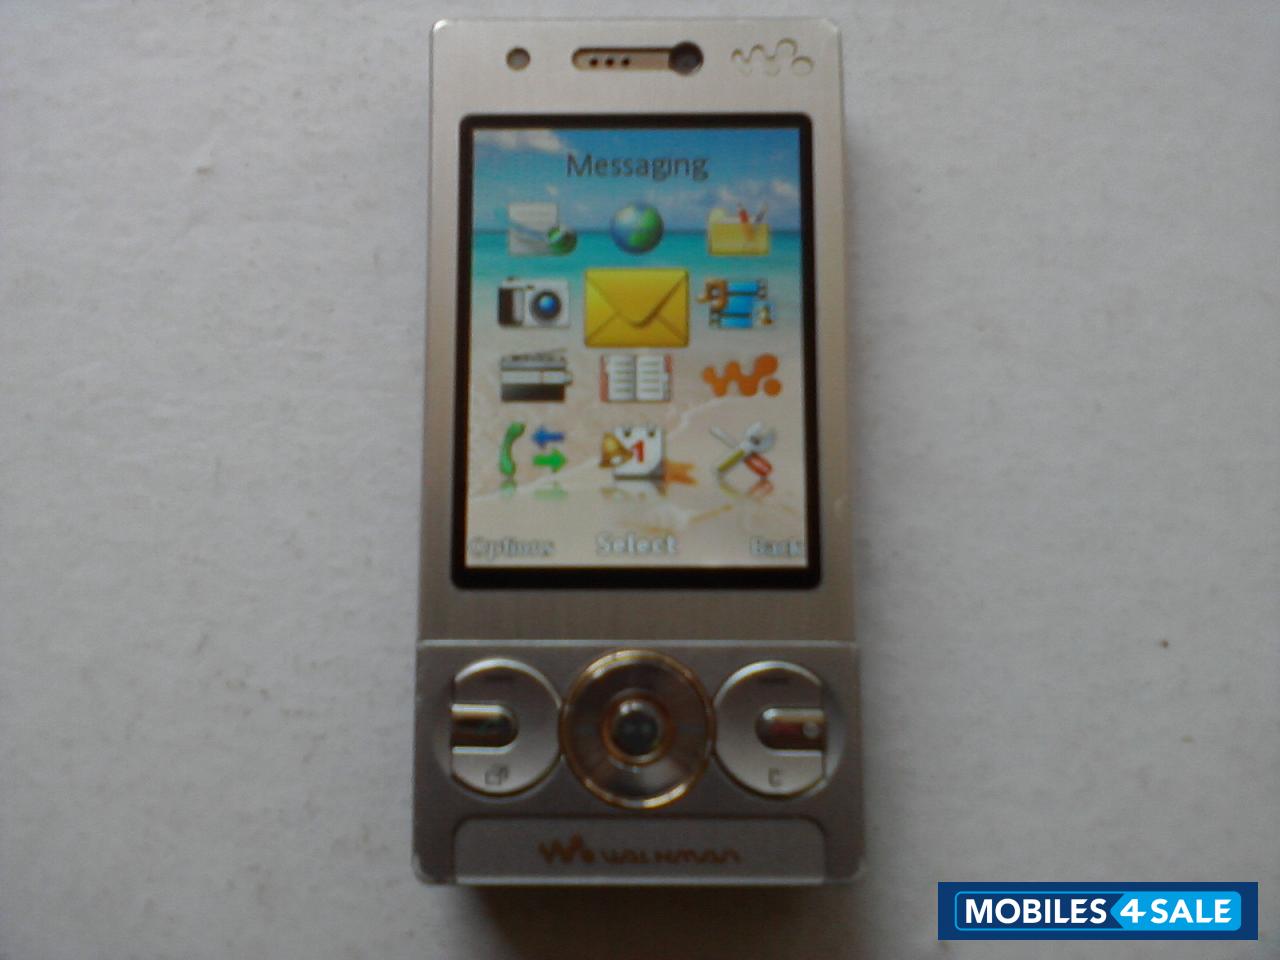 Metal Body Sony Ericsson W705